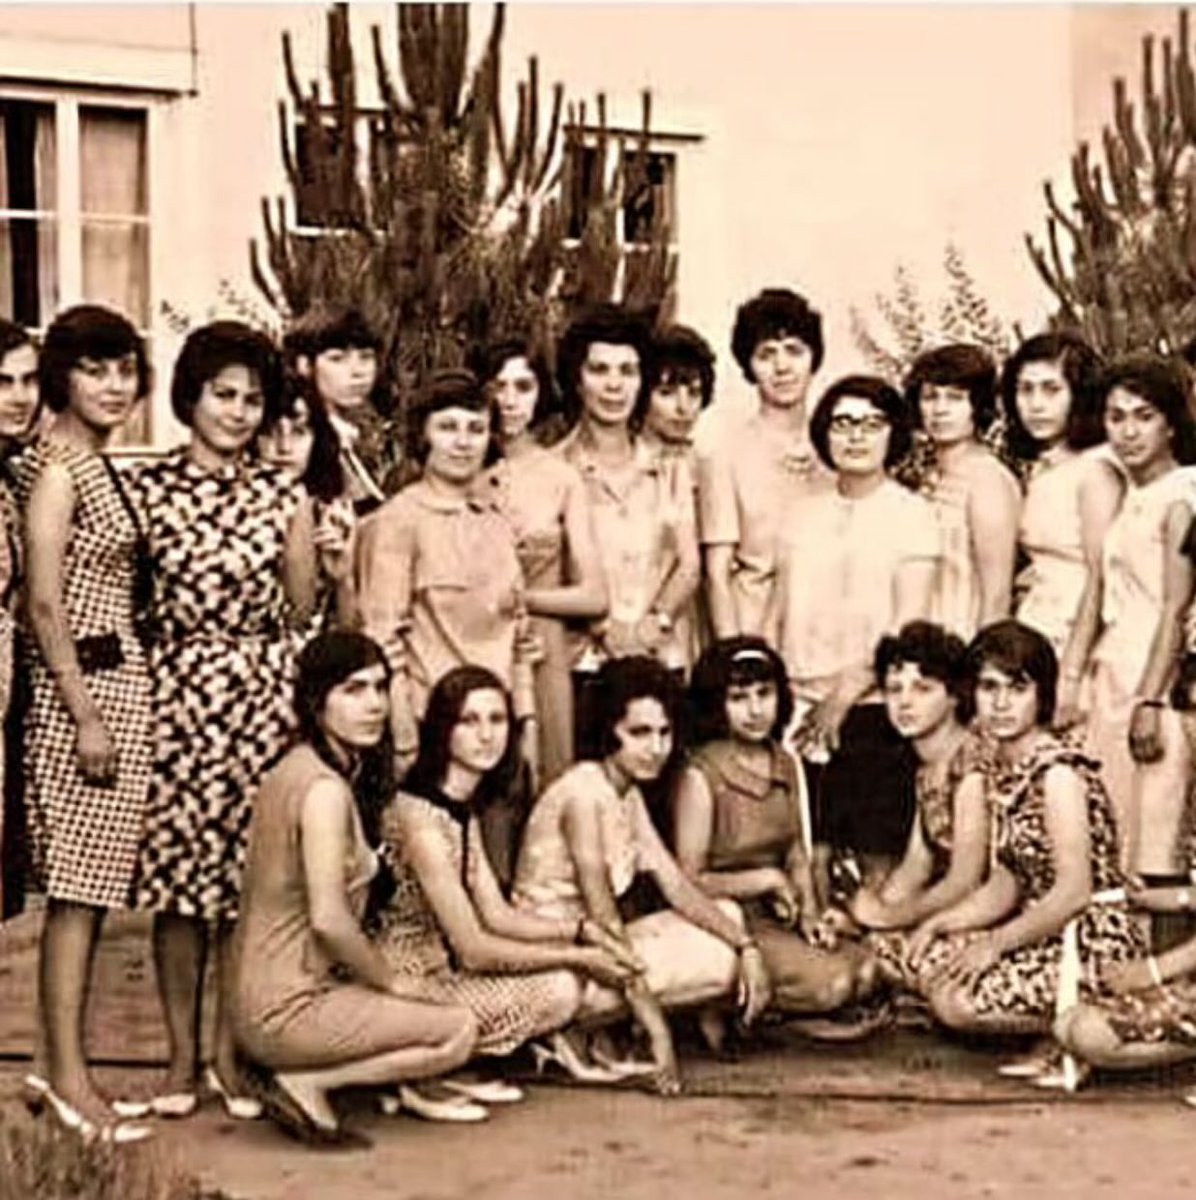 Nazilli Sümerbank basma fabrikasında düzenlenen baloya katılan işçi kadınlar..
Memleket 20 yılda 100 yıl geriye gitti..😔